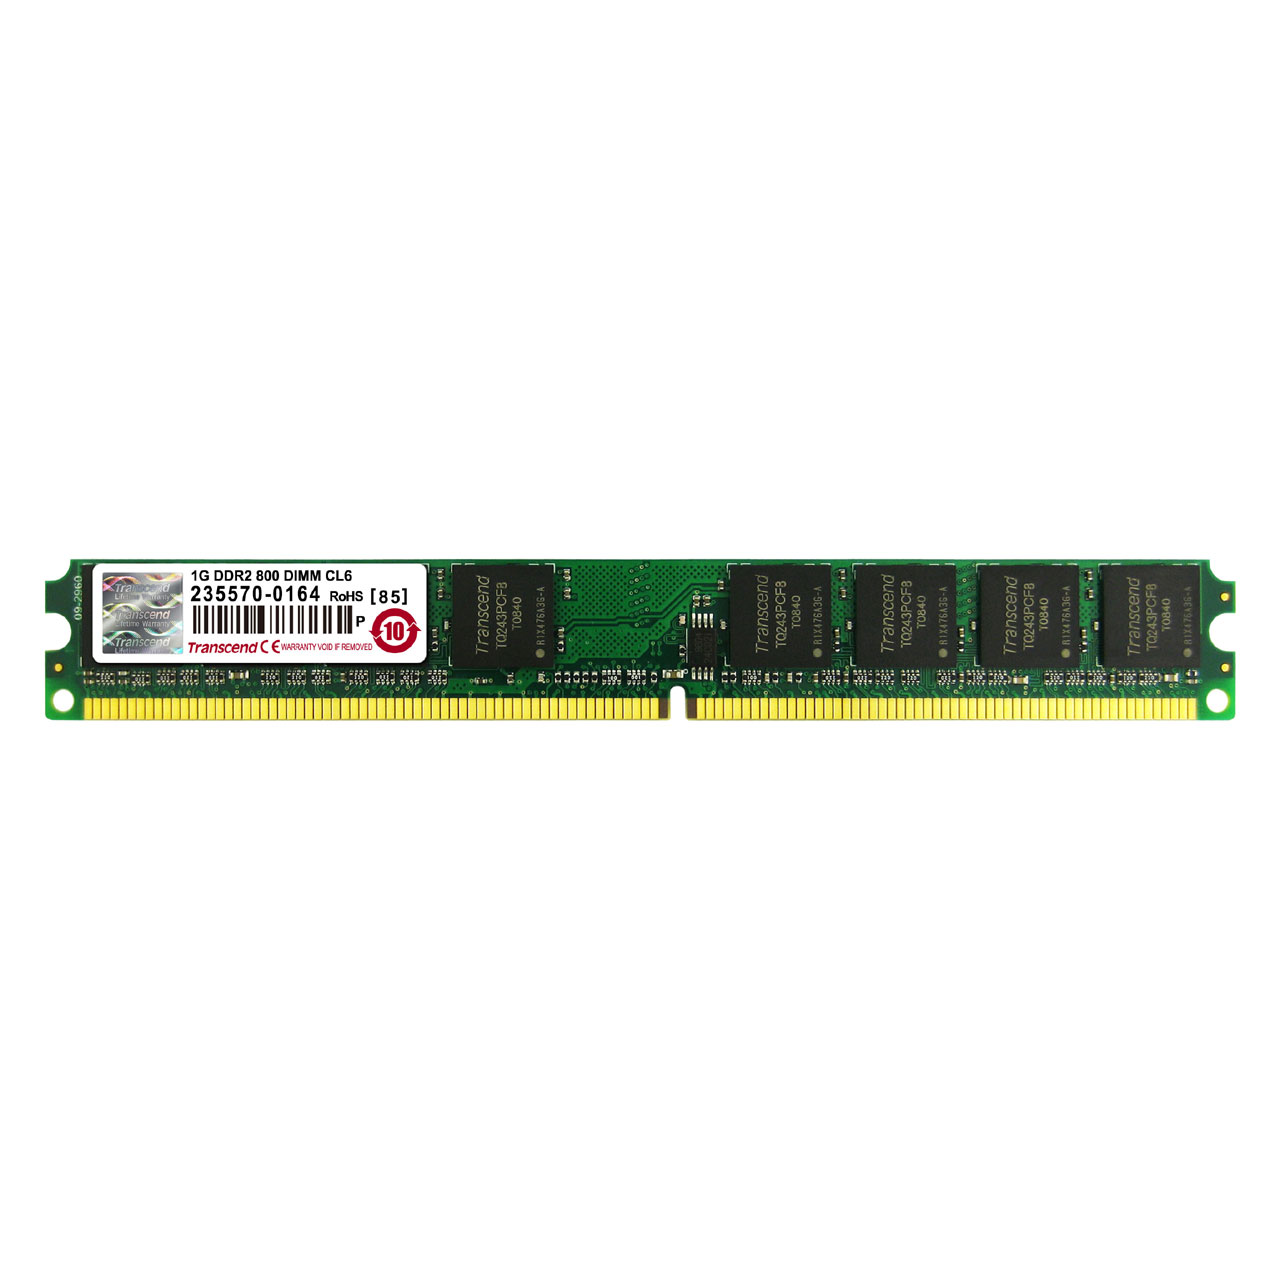 Transcend fXNgbvPCp݃ 1GB DDR2-800 PC2-6400 U-DIMM JM800QLU-1G JM800QLU-1G